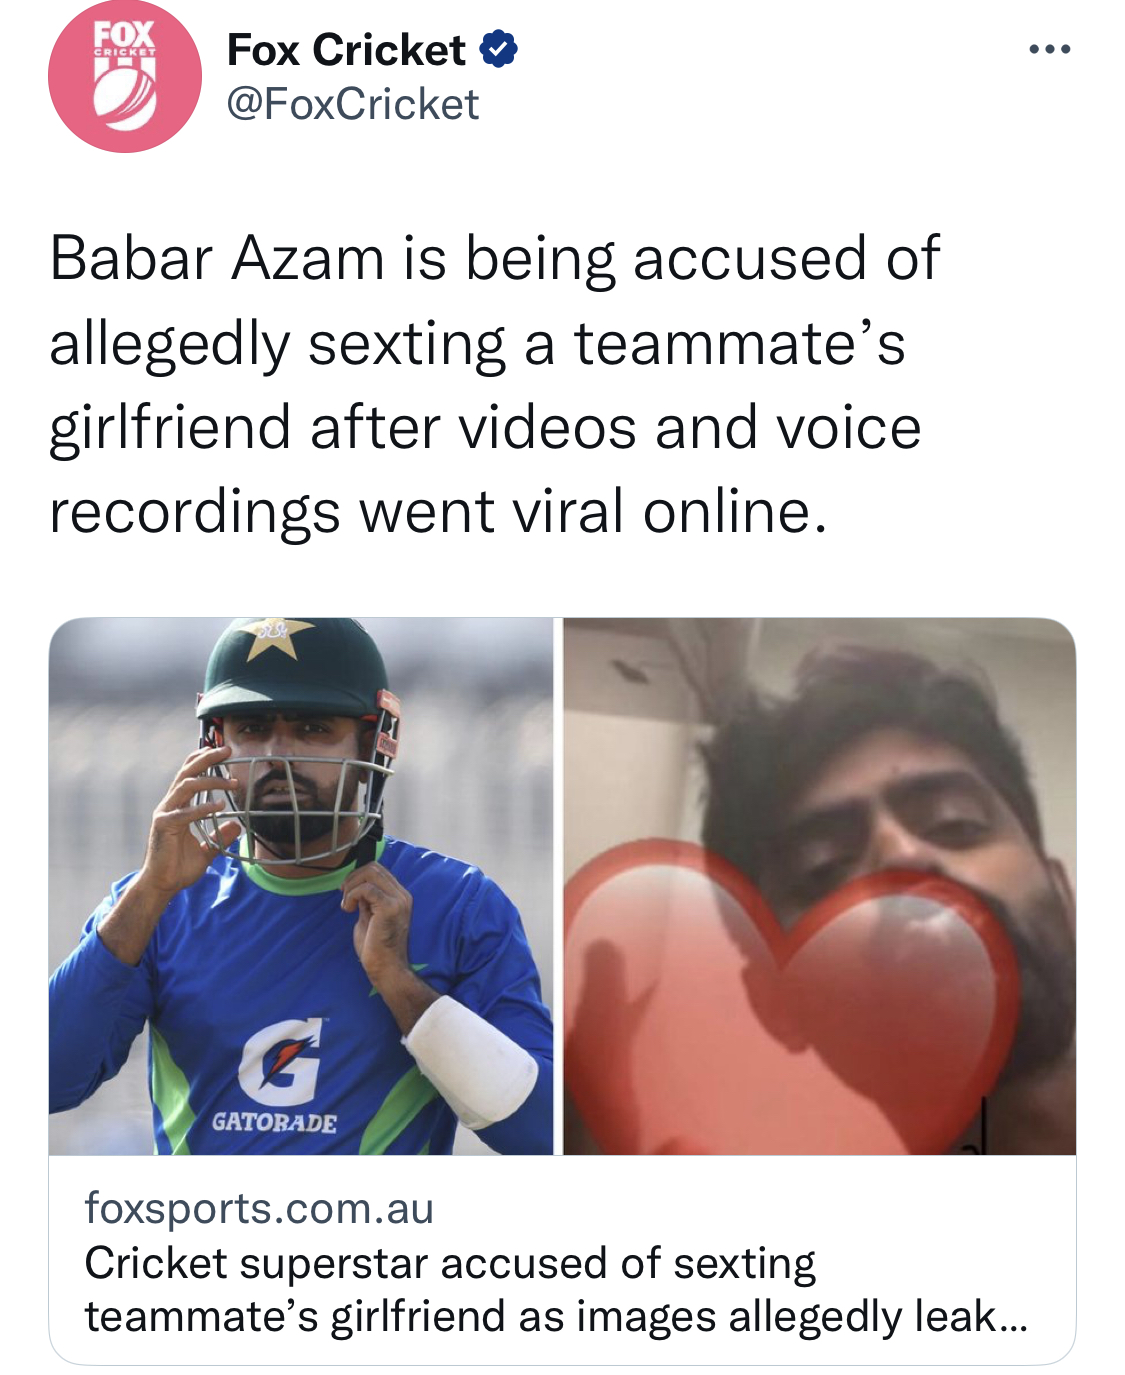 Screenshot of Fox Cricket's news story about Babar Azam